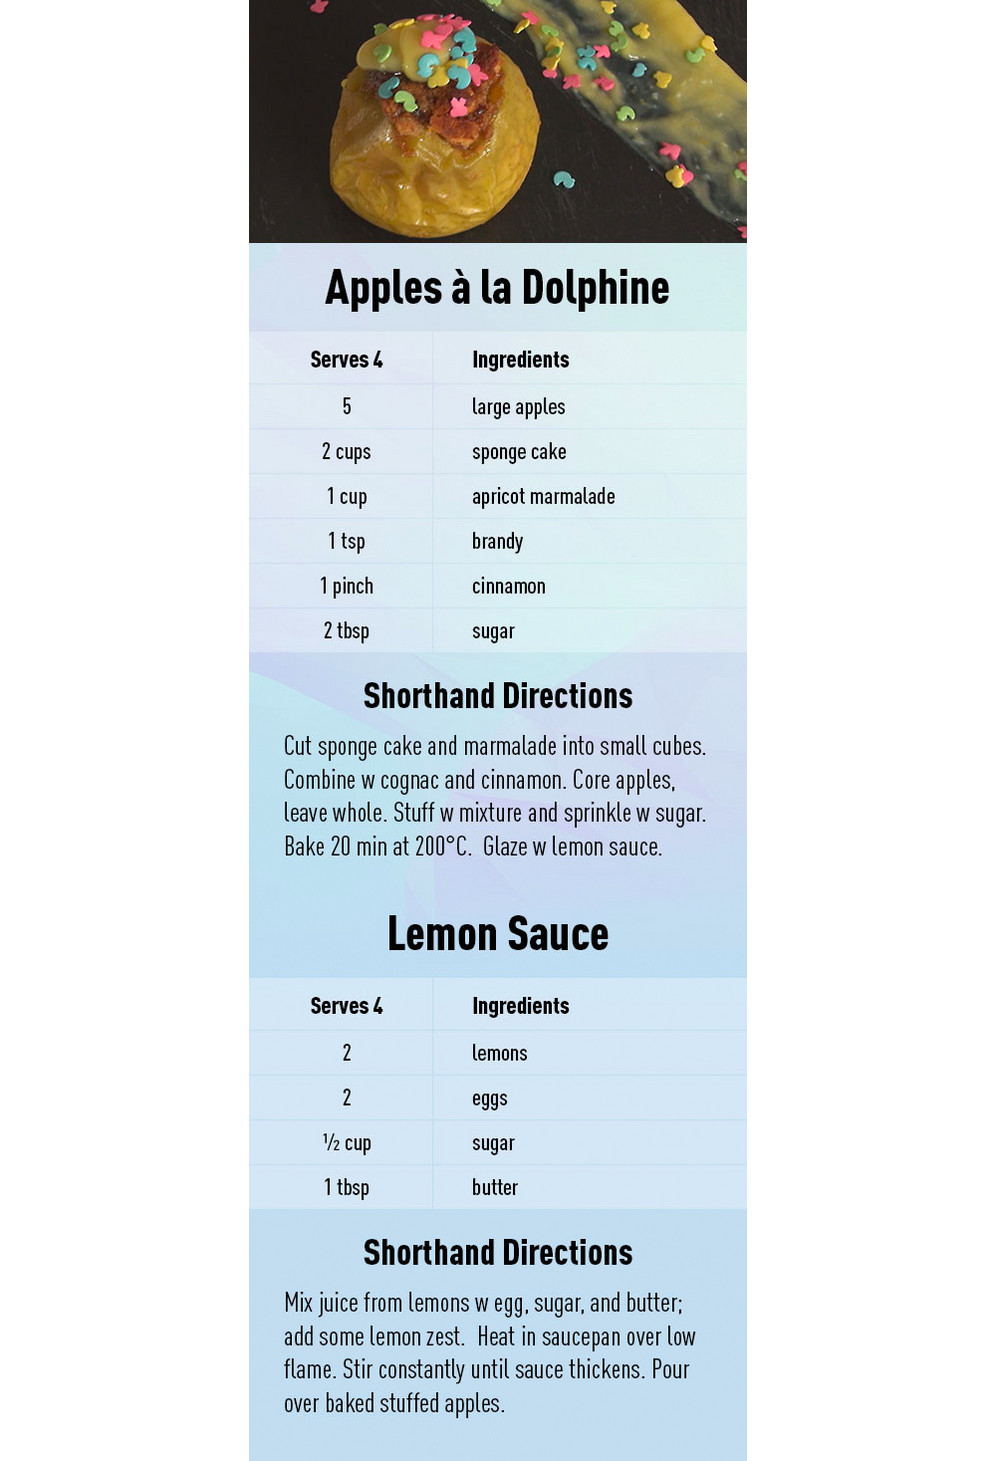 Apples a la Dolphine recipe